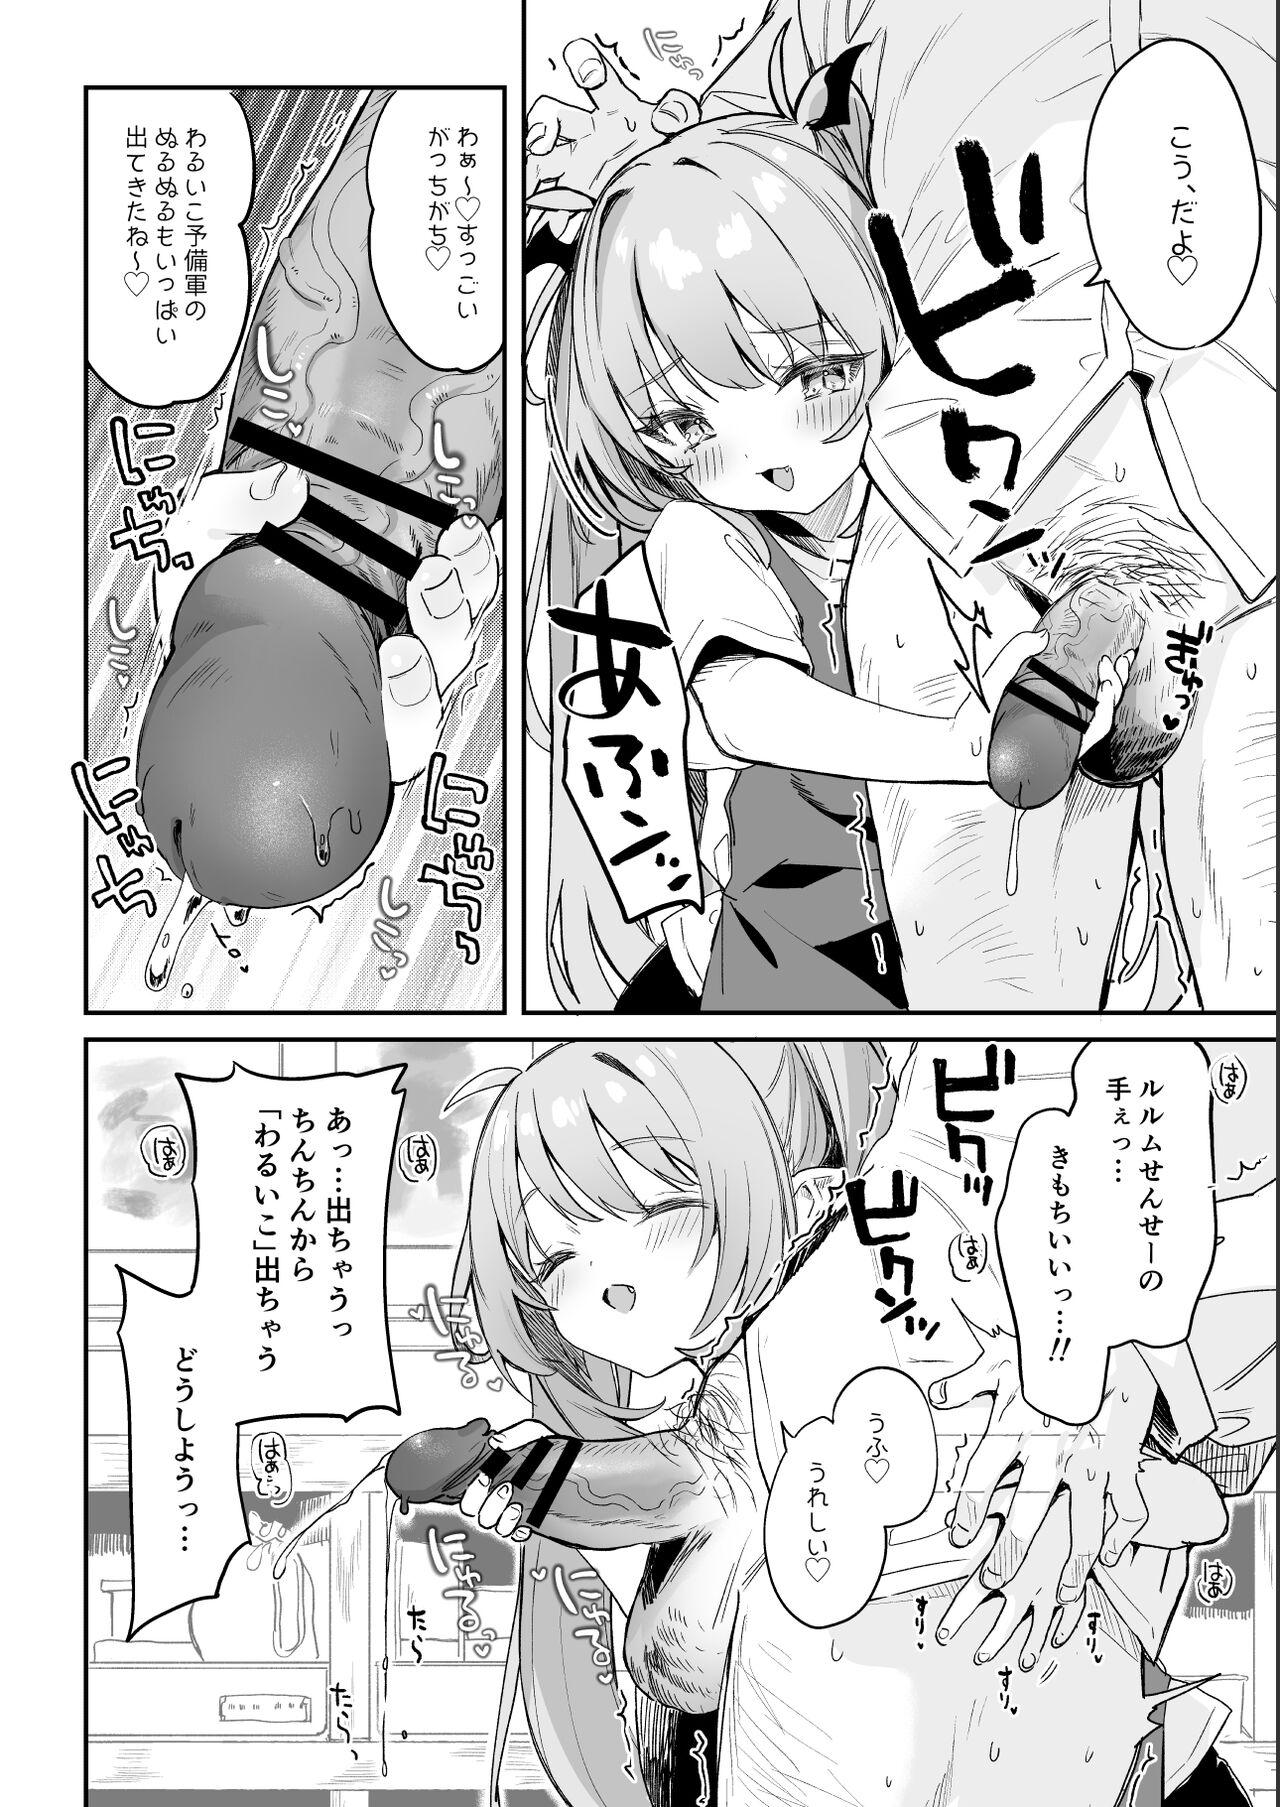 Gozada [Tamano Kedama] Kodomo no Hi (Imishin) ni Mukete Manga o Kaku - Original Gagging - Page 8